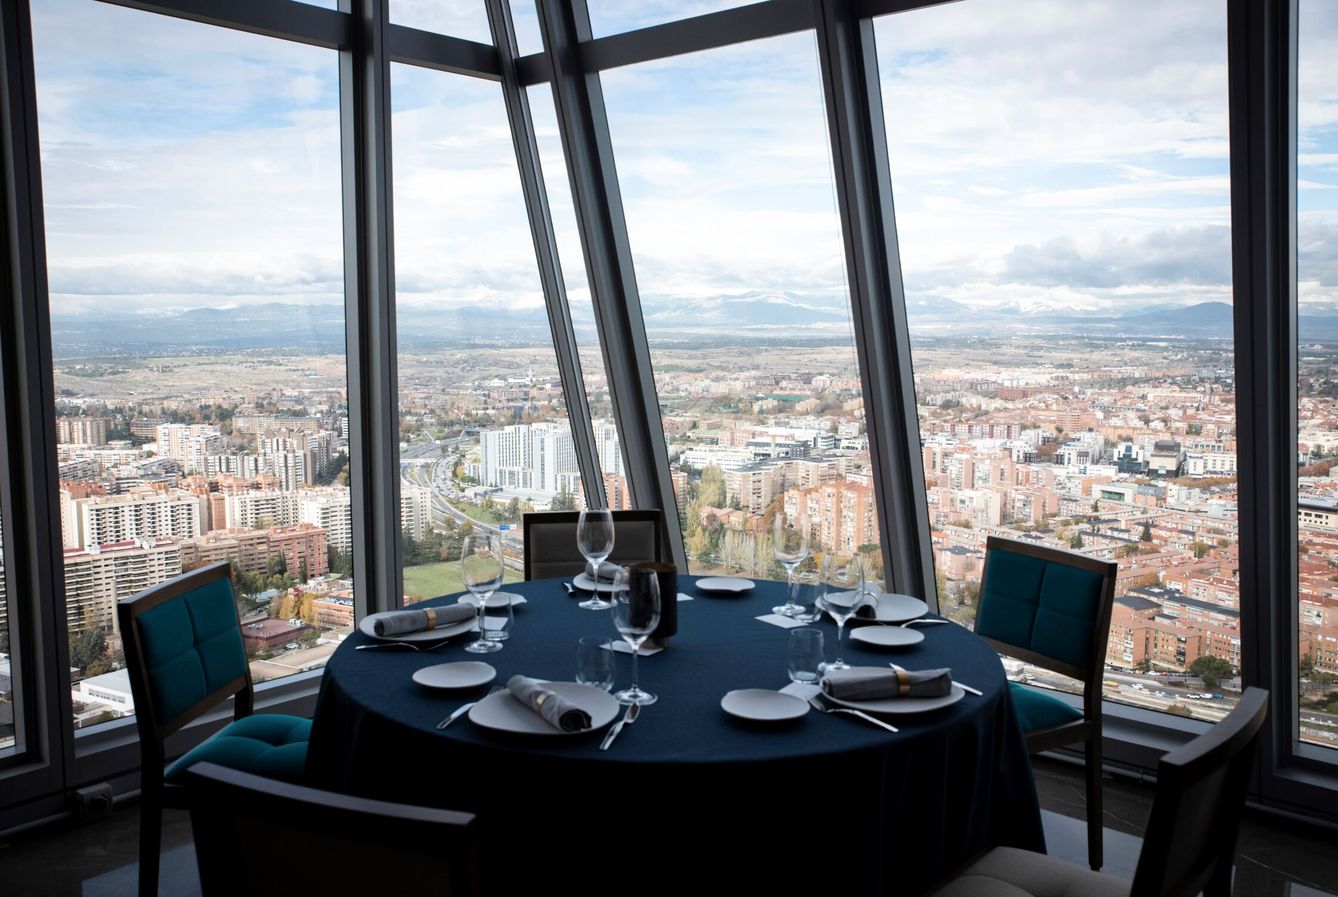 Vistas desde el Élkar, el restaurante situado a mayor altura de España, en la planta 33 de Torre Emperador.